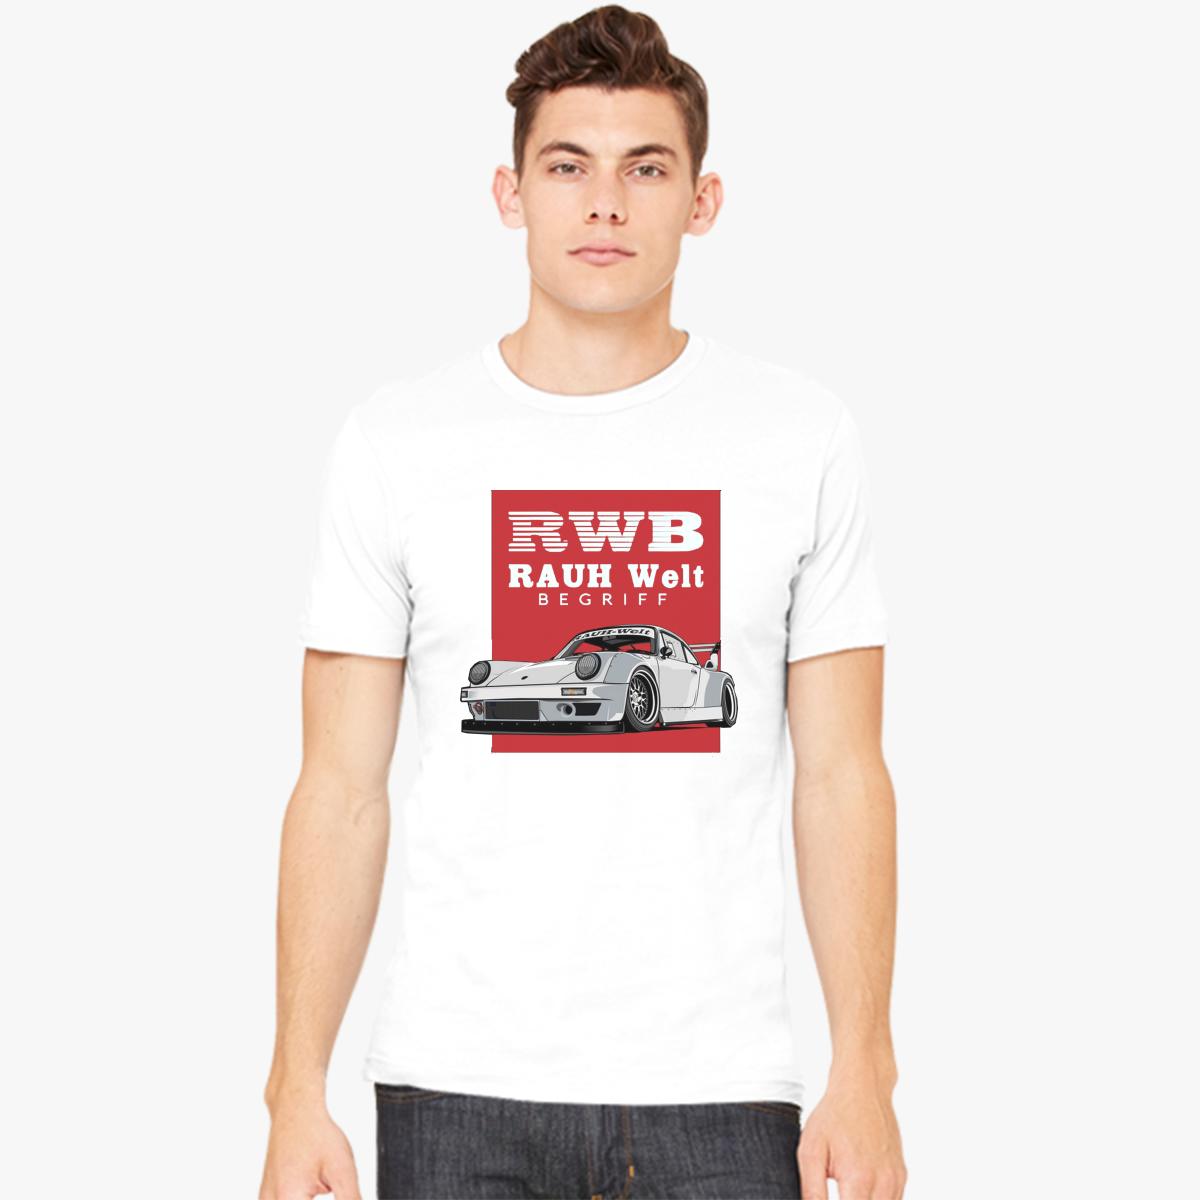 Rauh Welt Begriff-WHite Men's T-shirt